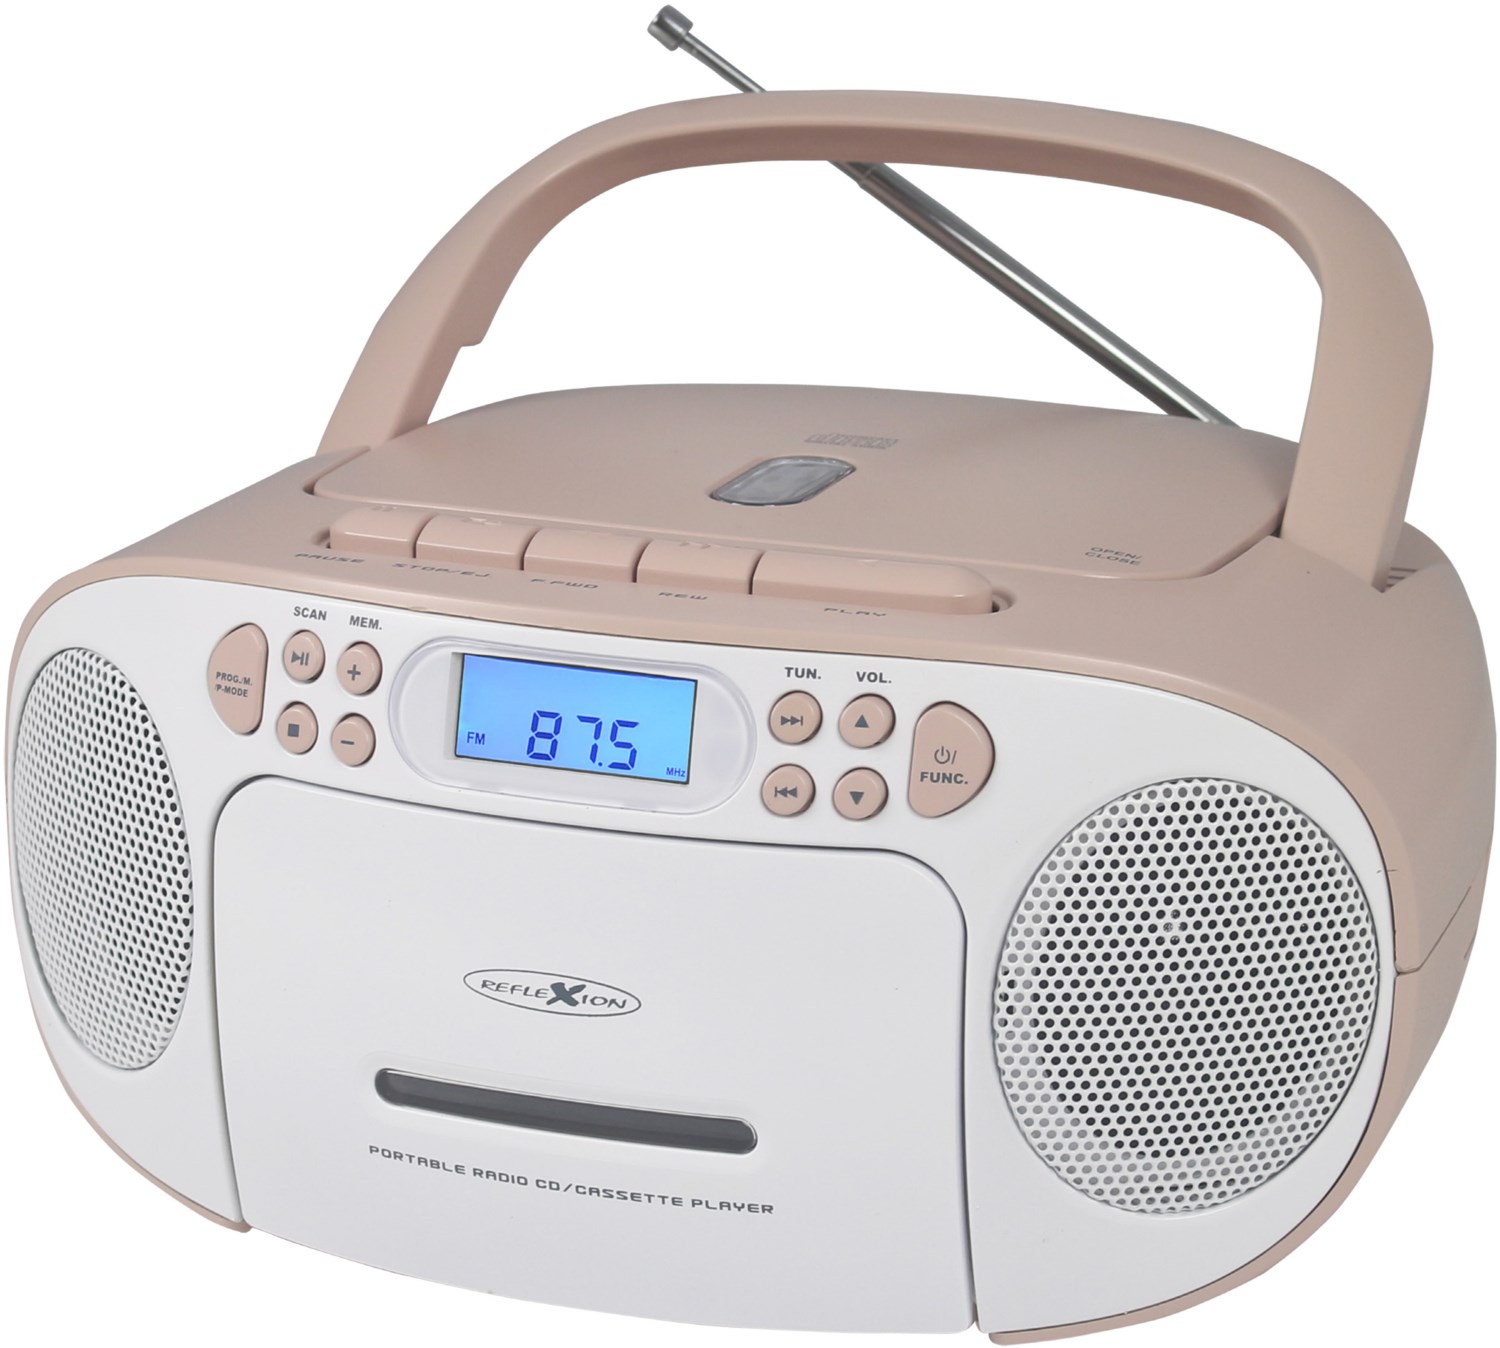 RCR2260 Radio-Rekorder mit CD + Kassette weiß/pink